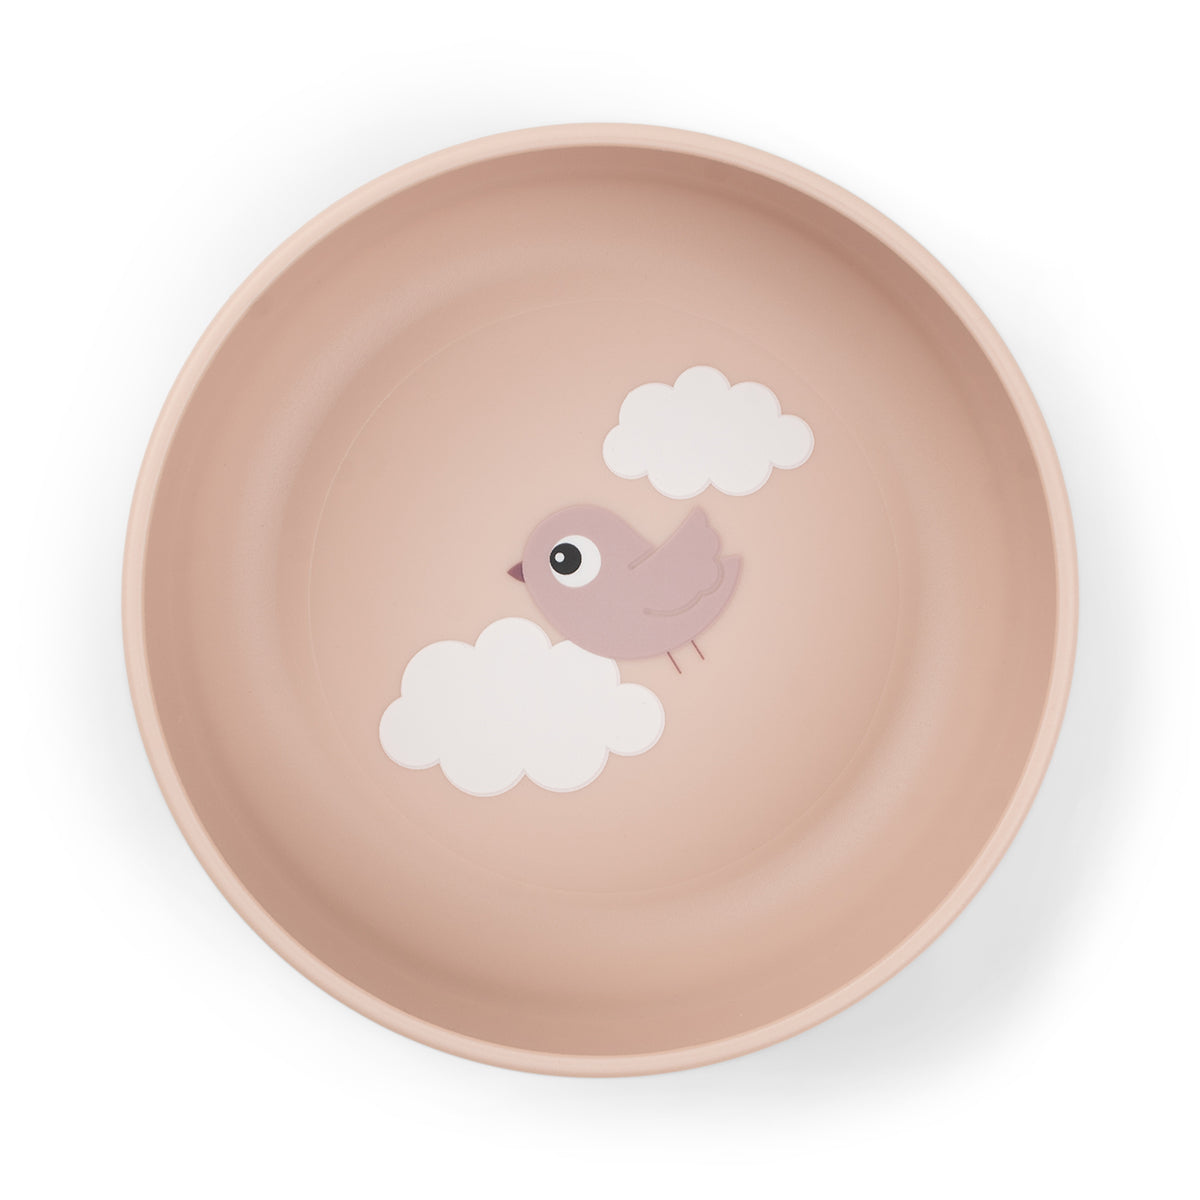 Foodie bowl - Happy clouds - Powder